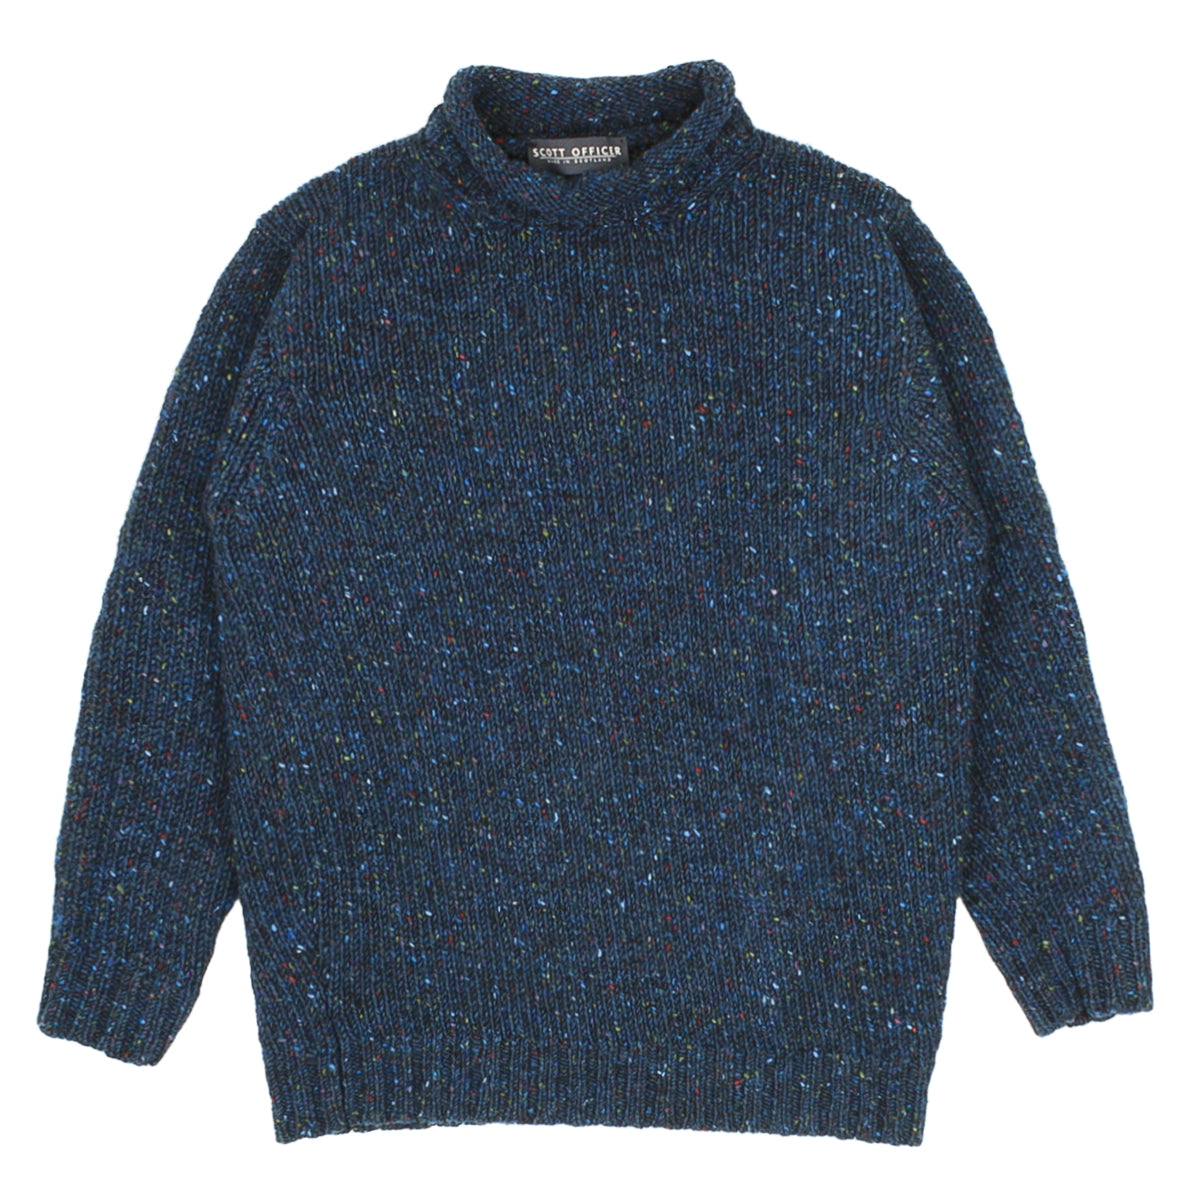 Sweater - Derrybeg Wool